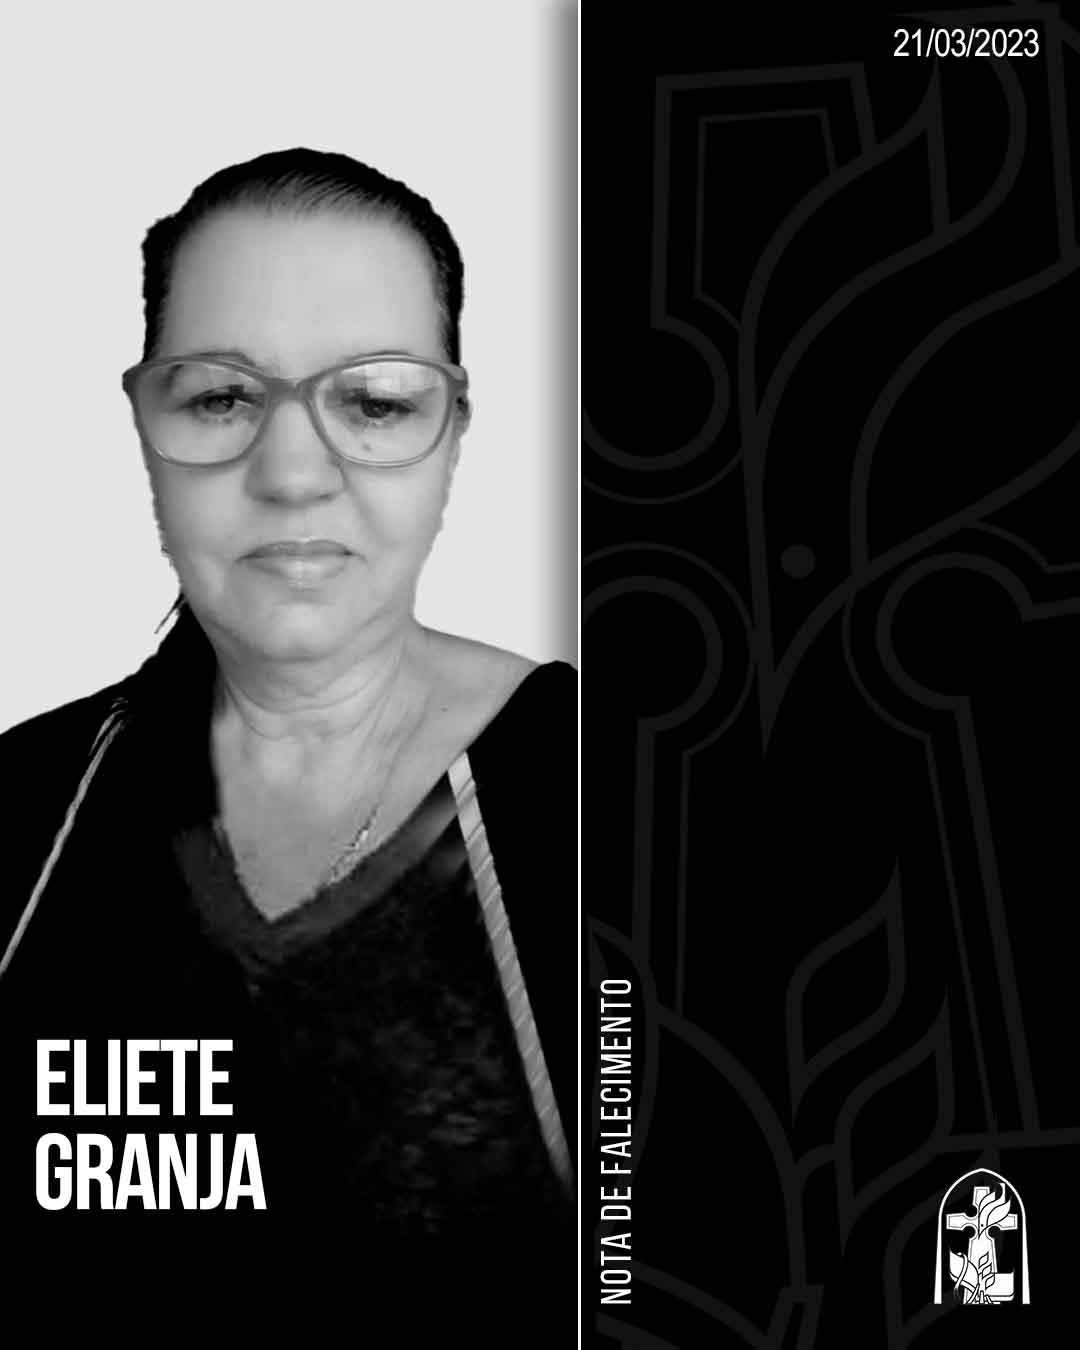 Eliete Granja